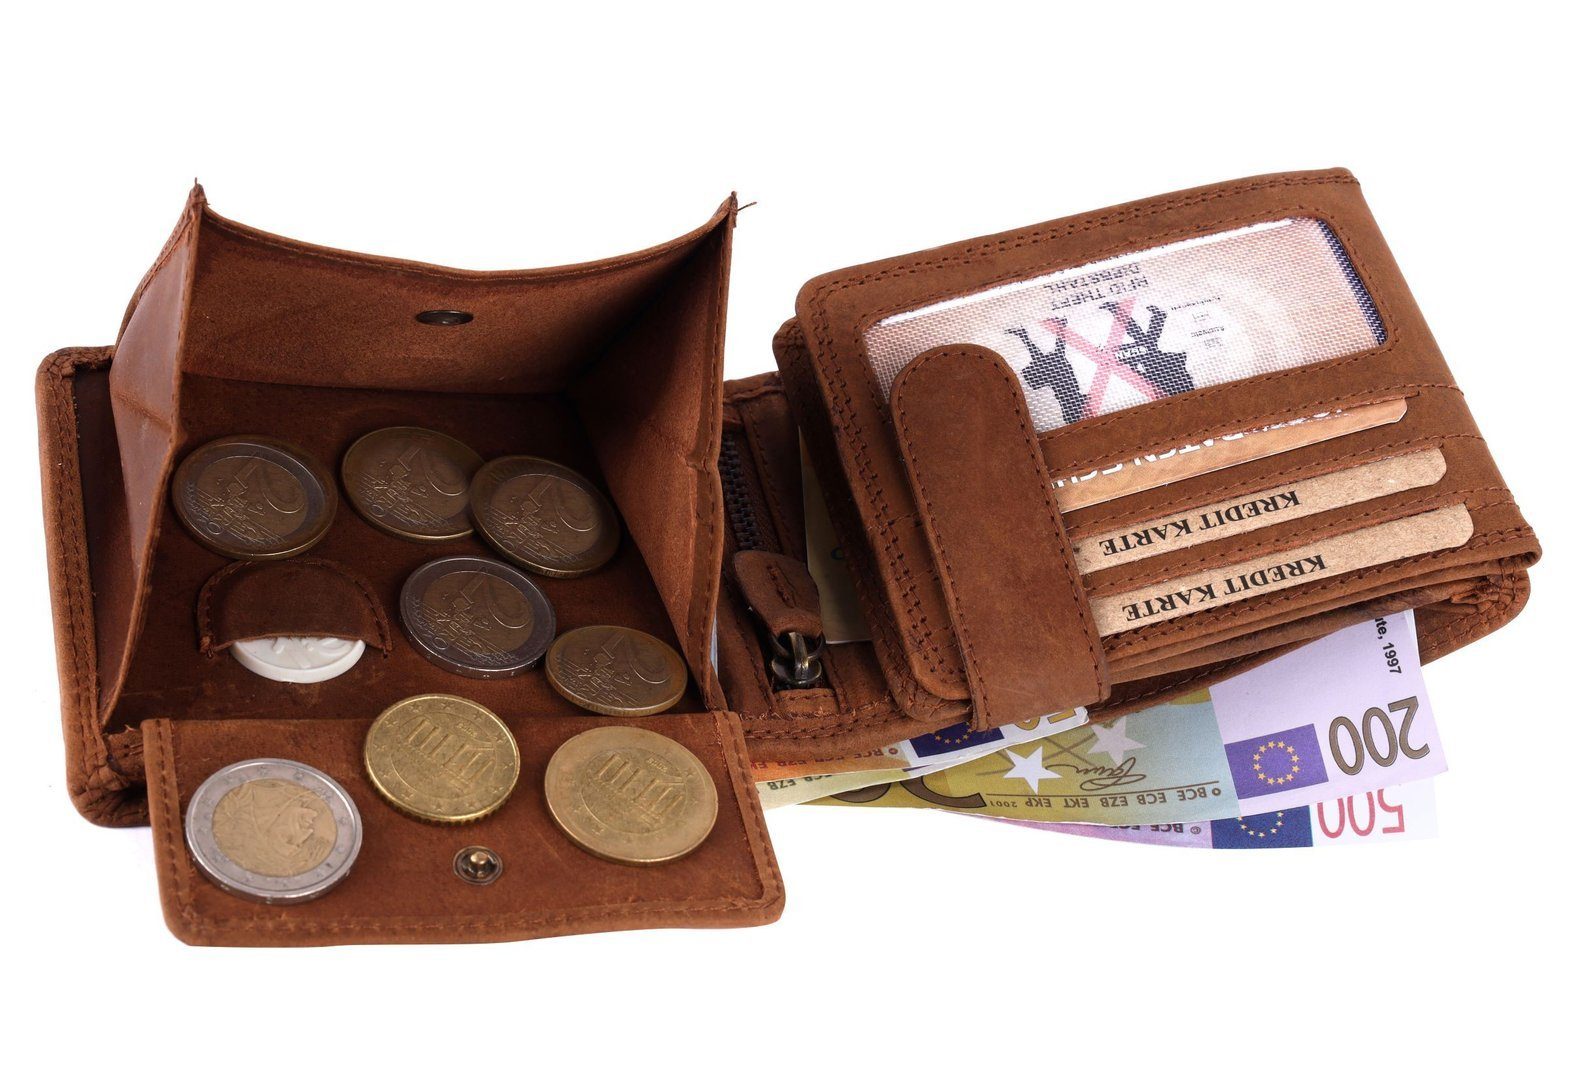 SHG Geldbörse Herren Börse RFID mit Münzfach Leder Brieftasche Lederbörse Schutz Portemonnaie, Büffelleder Männerbörse